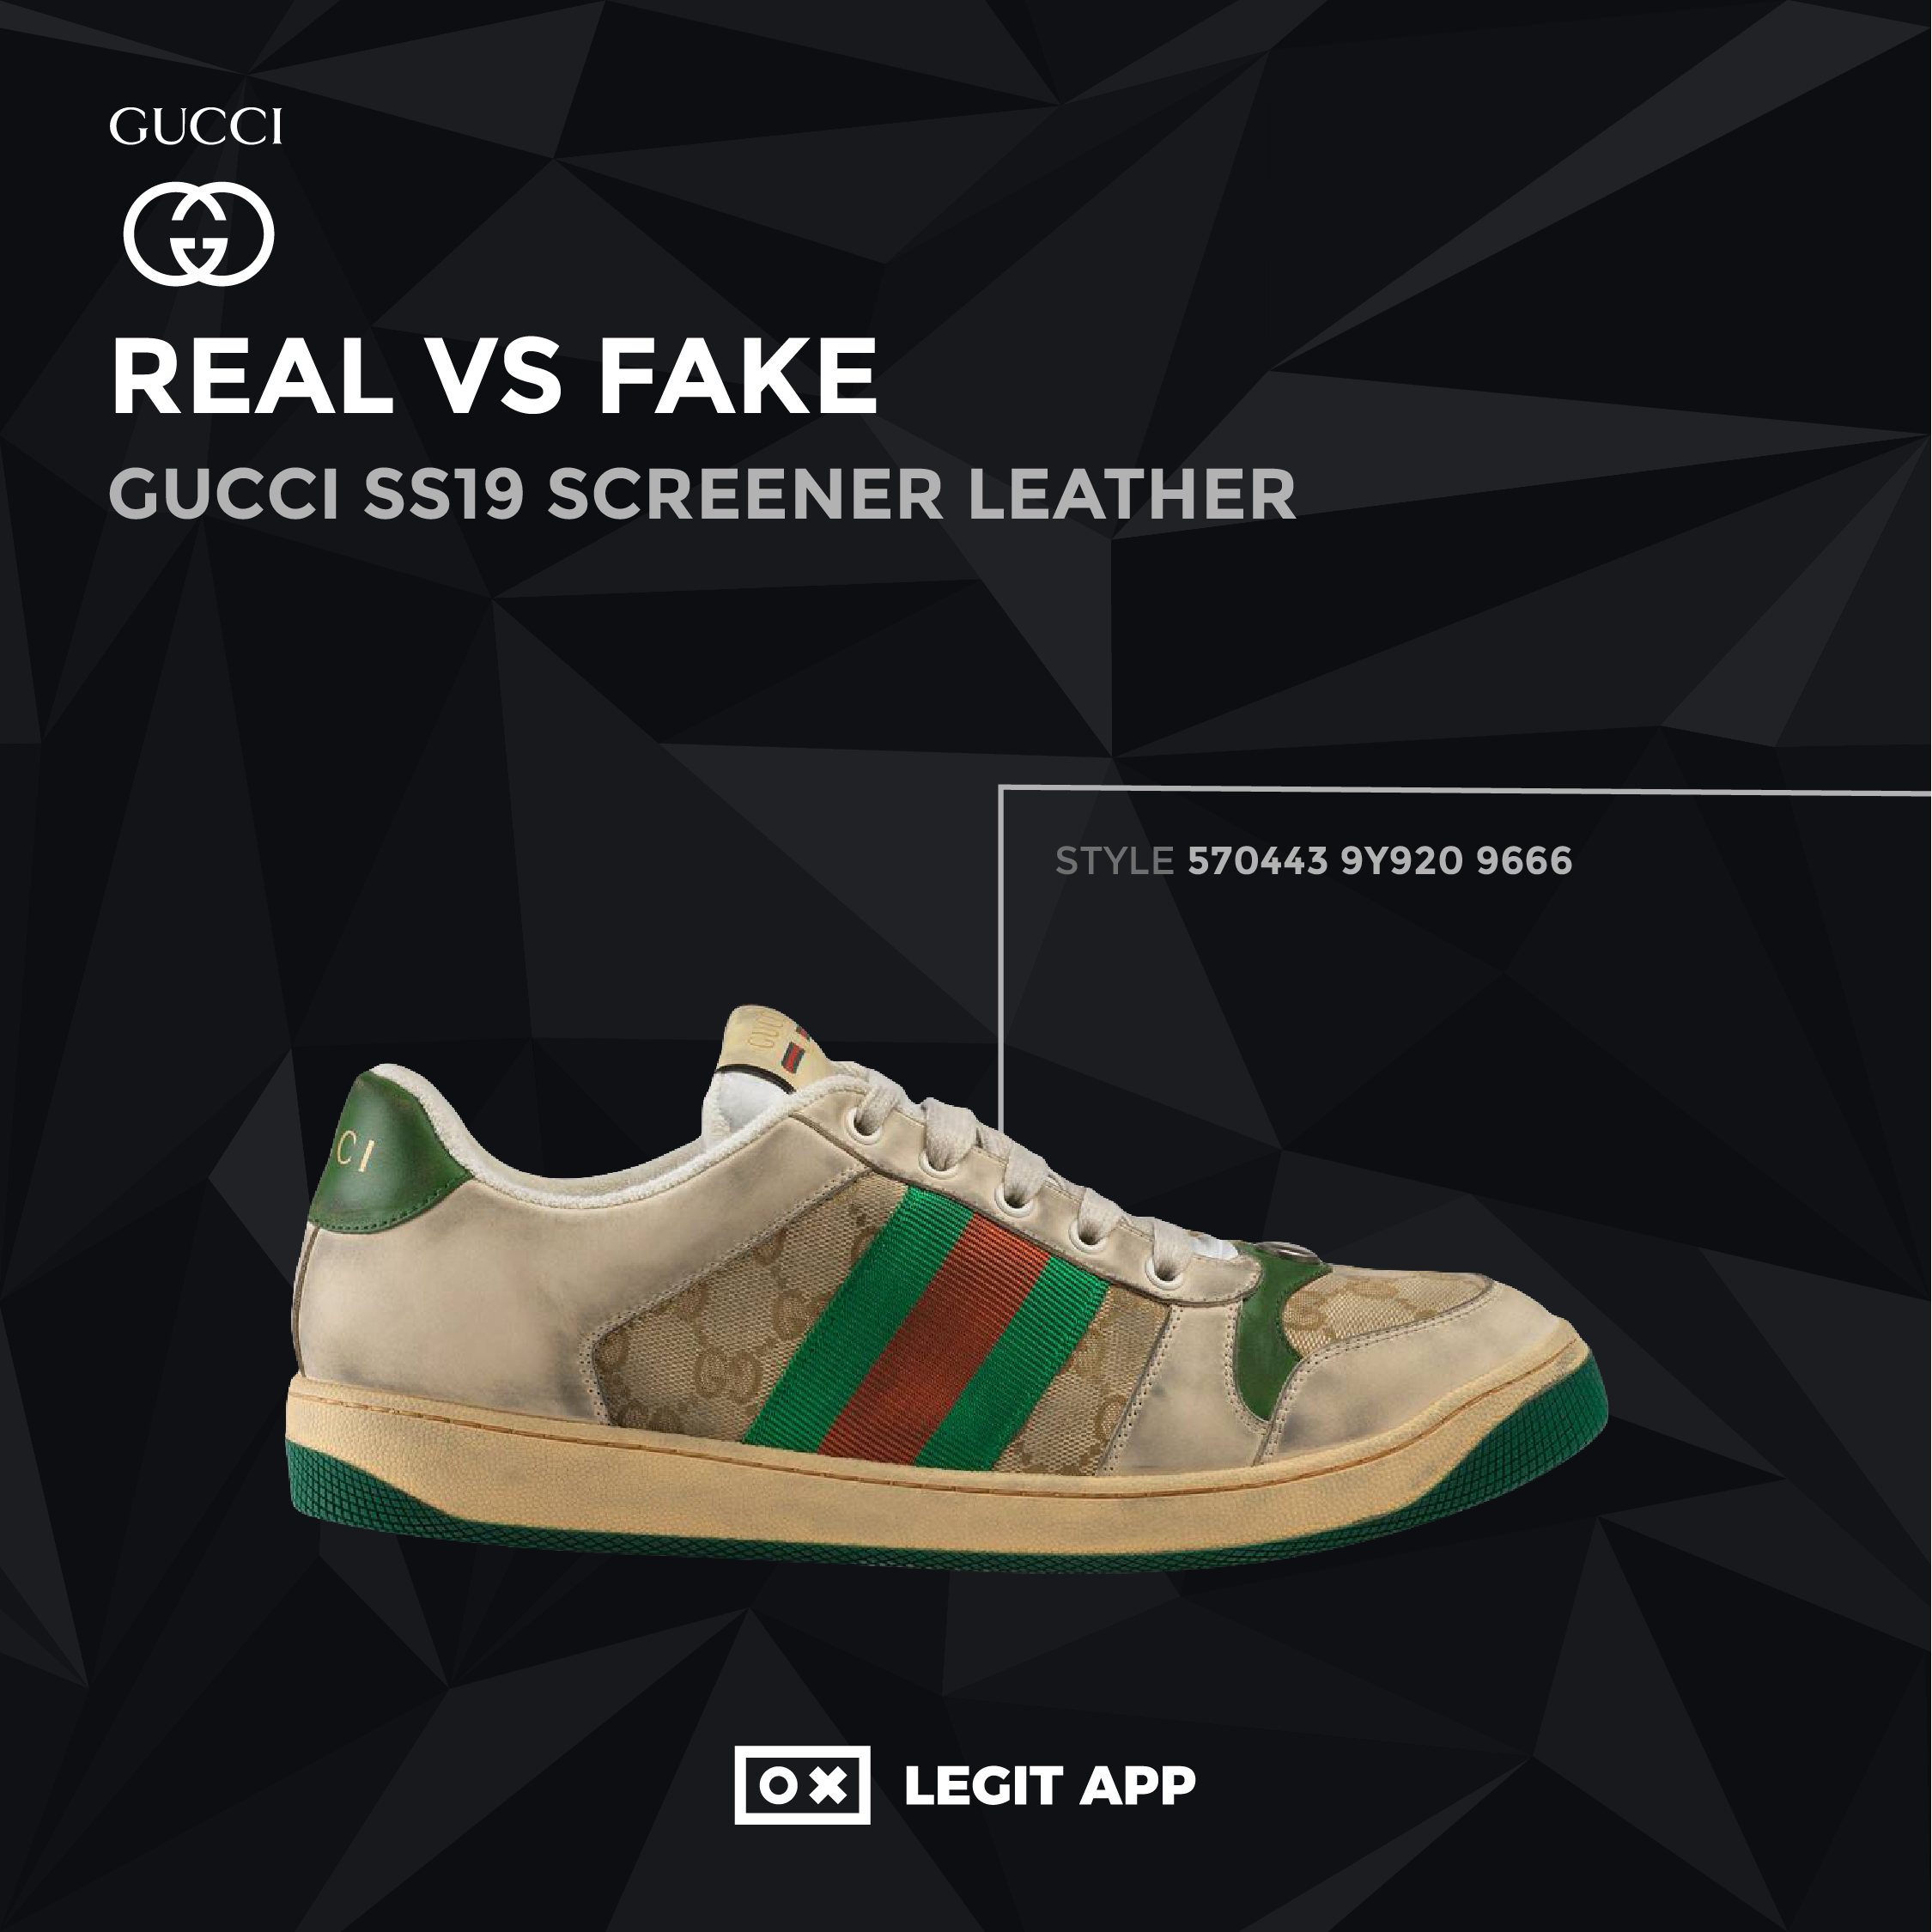 real vs fake gucci shoes